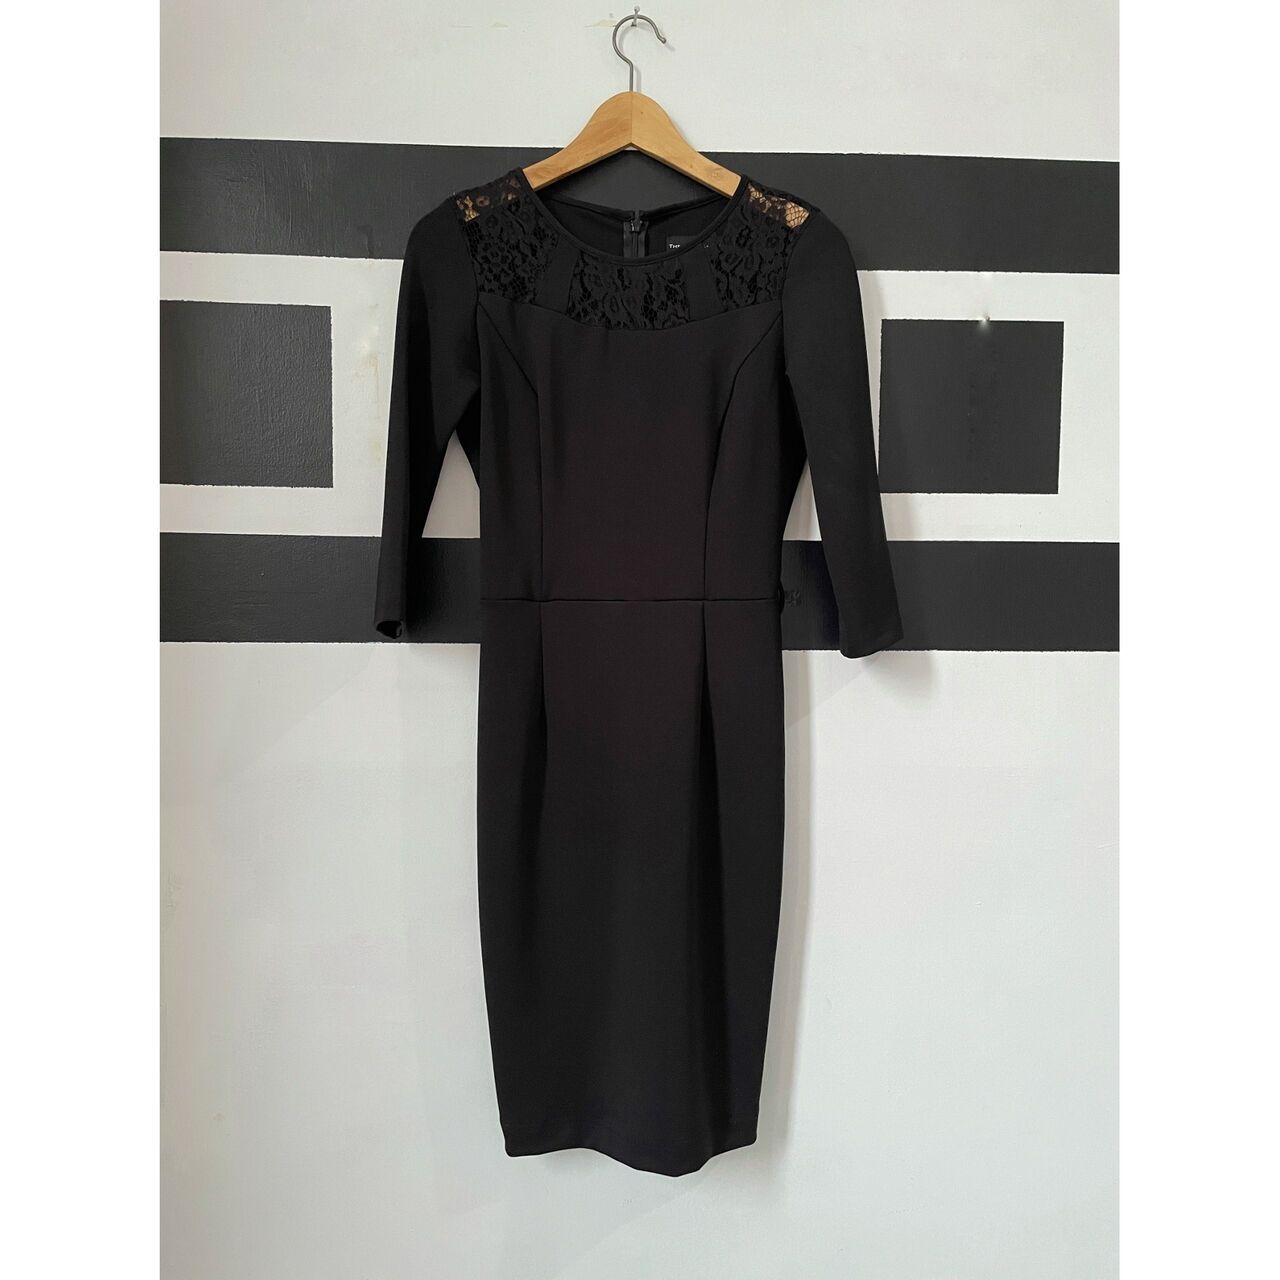 The Executive Black Midi Dress